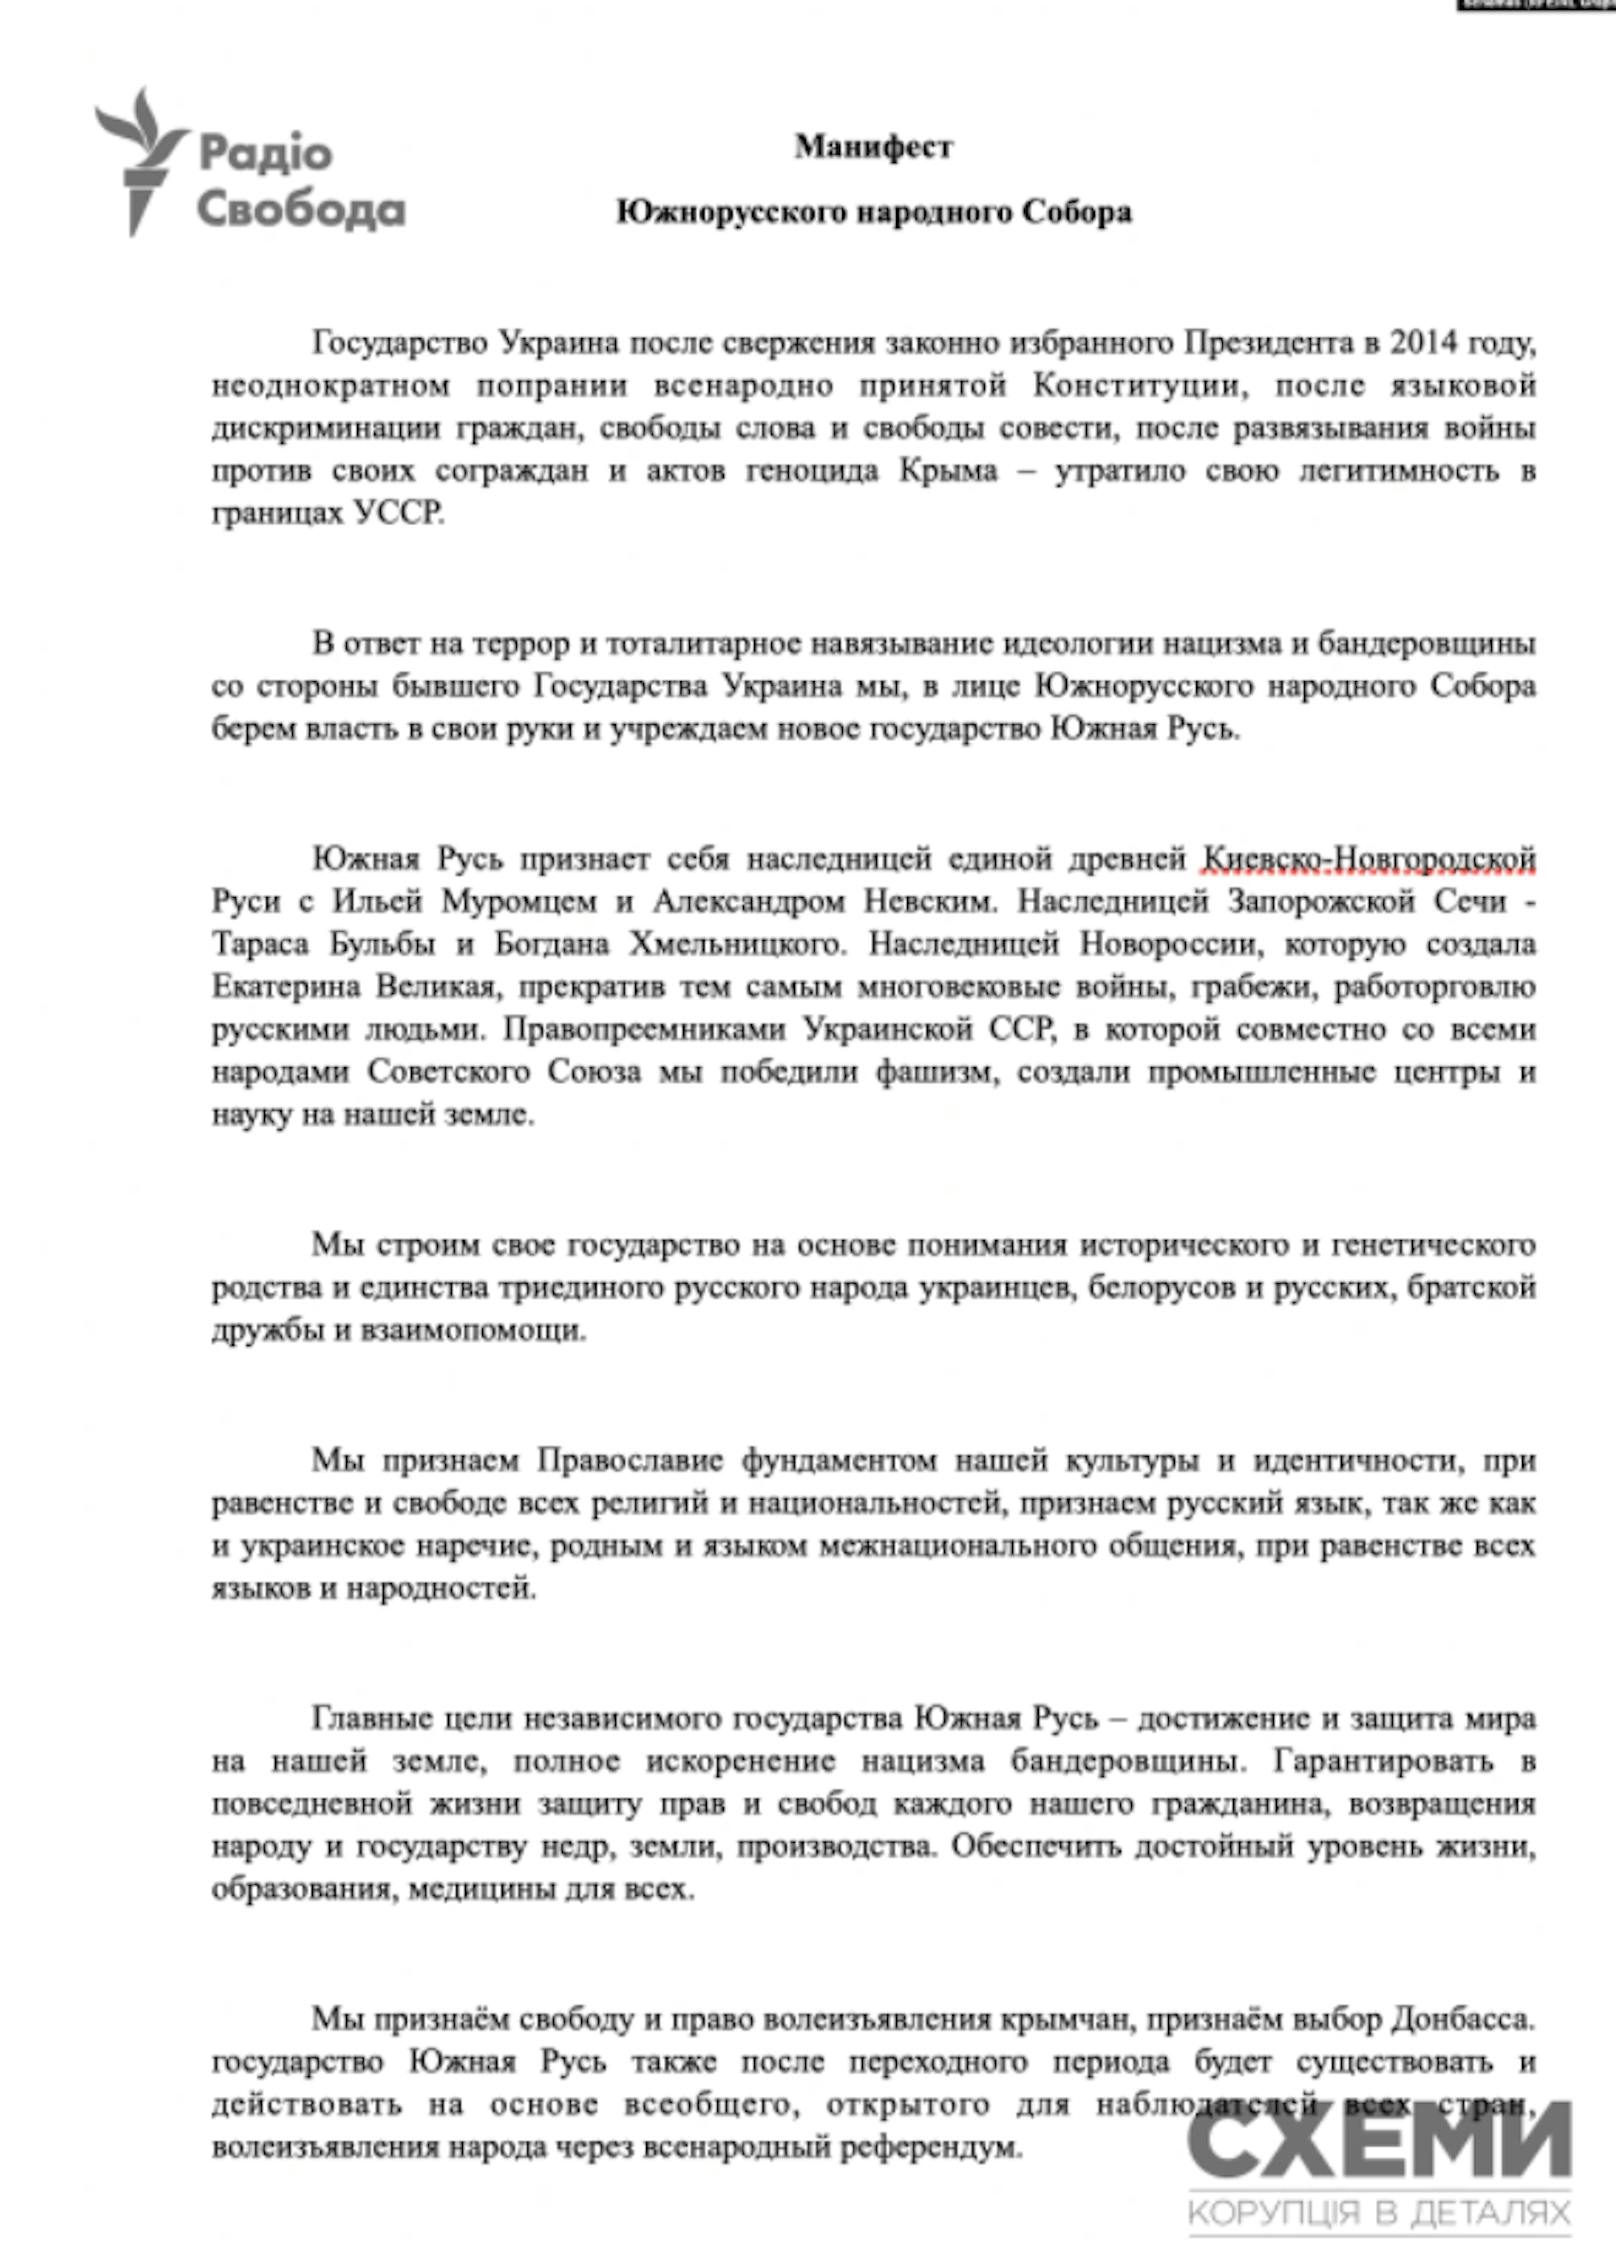 Das geleakte Dokument soll beweisen, dass Russland einen neuen Staat unter dem Namen «Südrussland» bilden möchte.